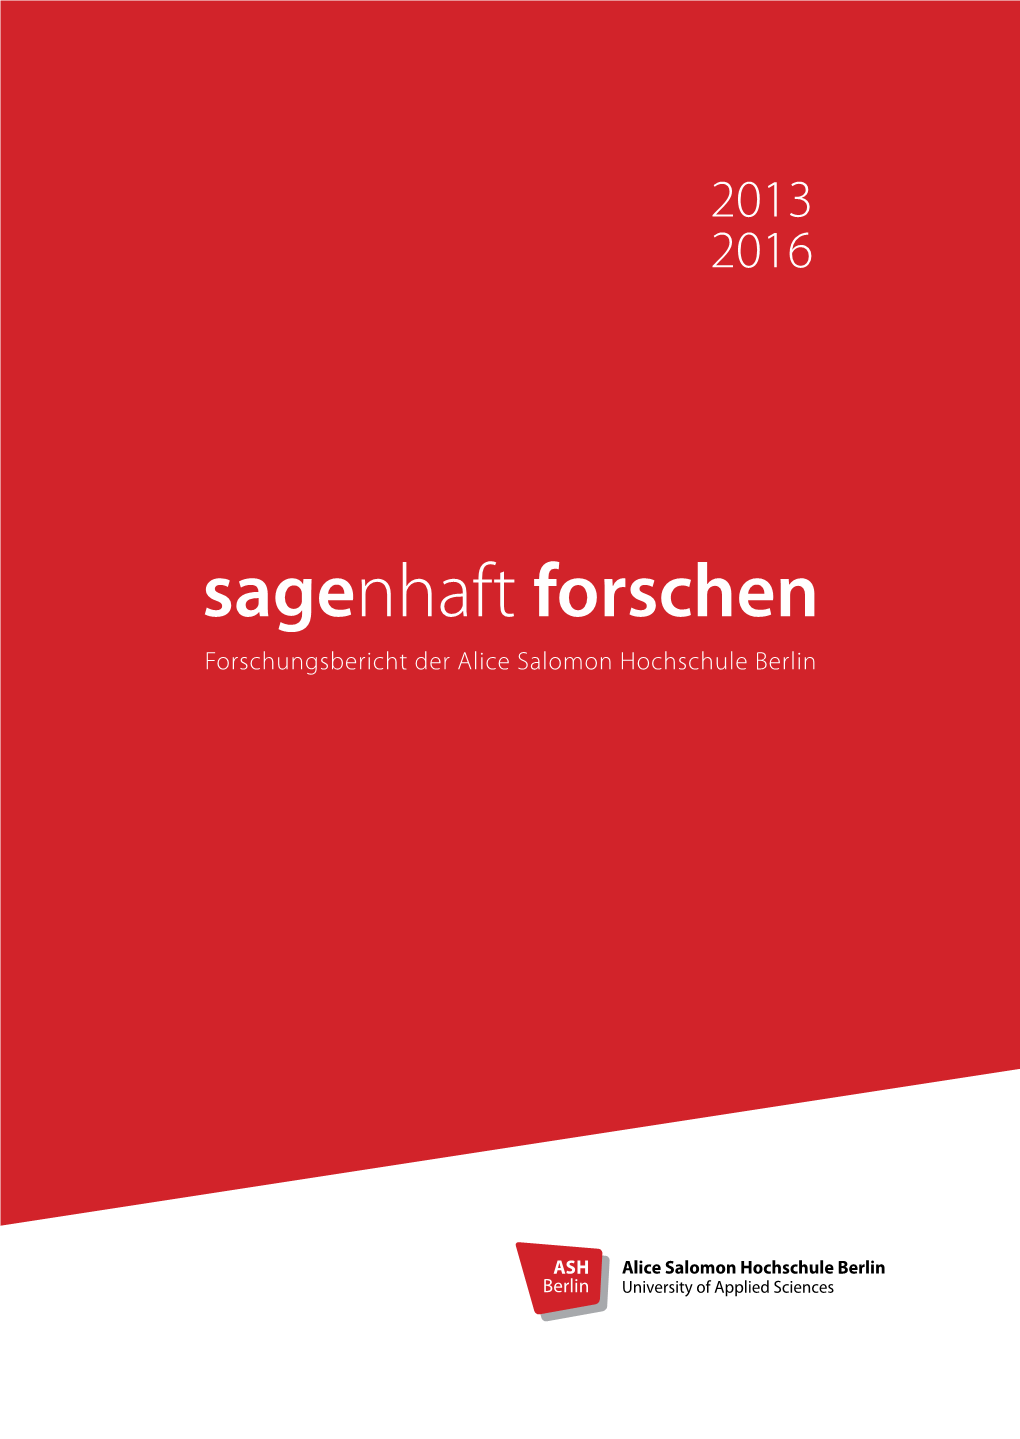 Forschungsbericht 2013-2016